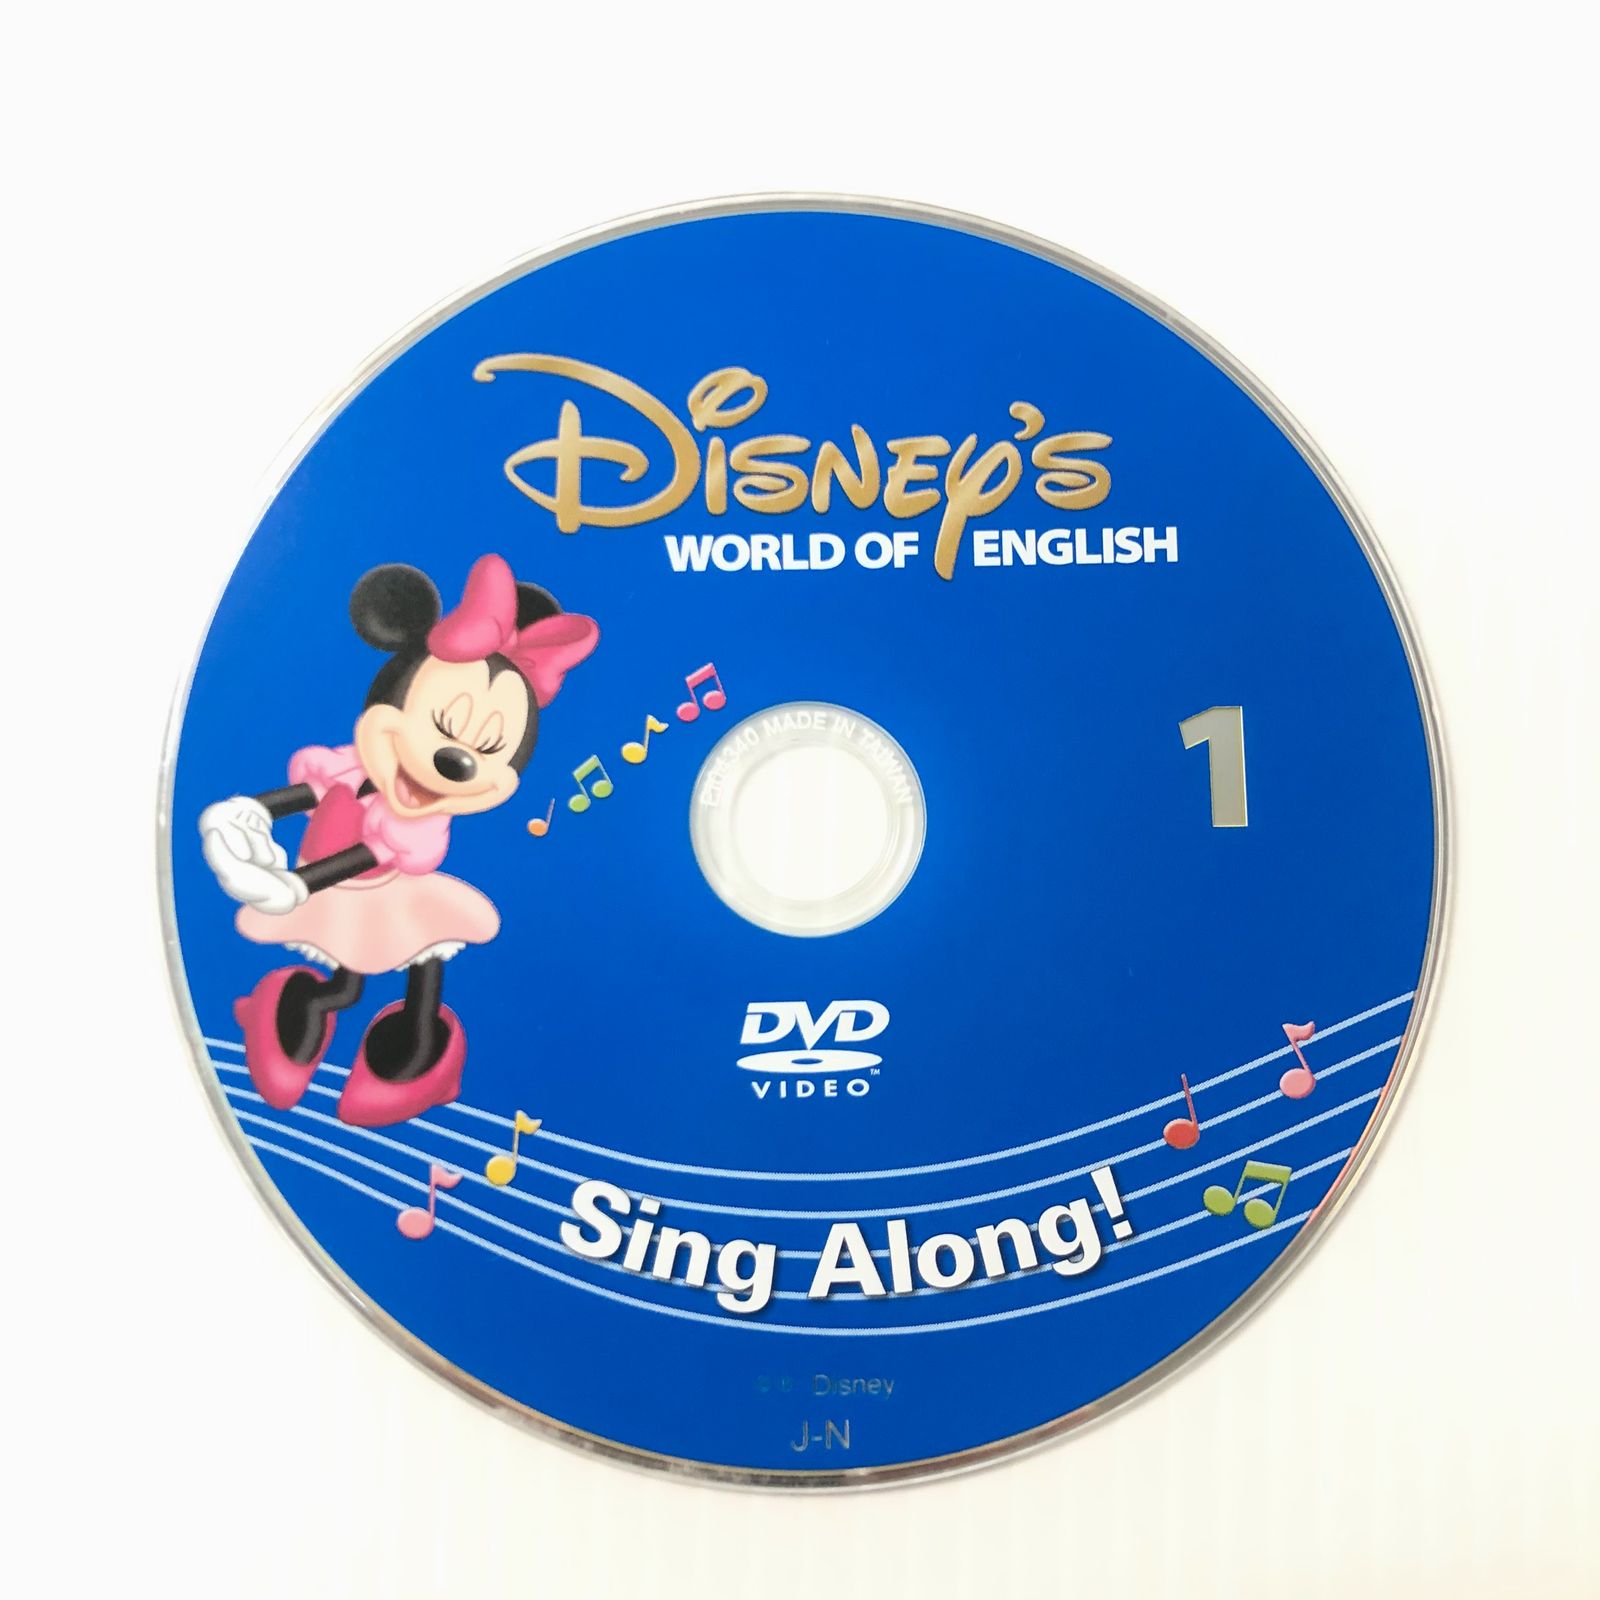 ディズニー英語システム シングアロング DVD 新子役 2015年 英語教材